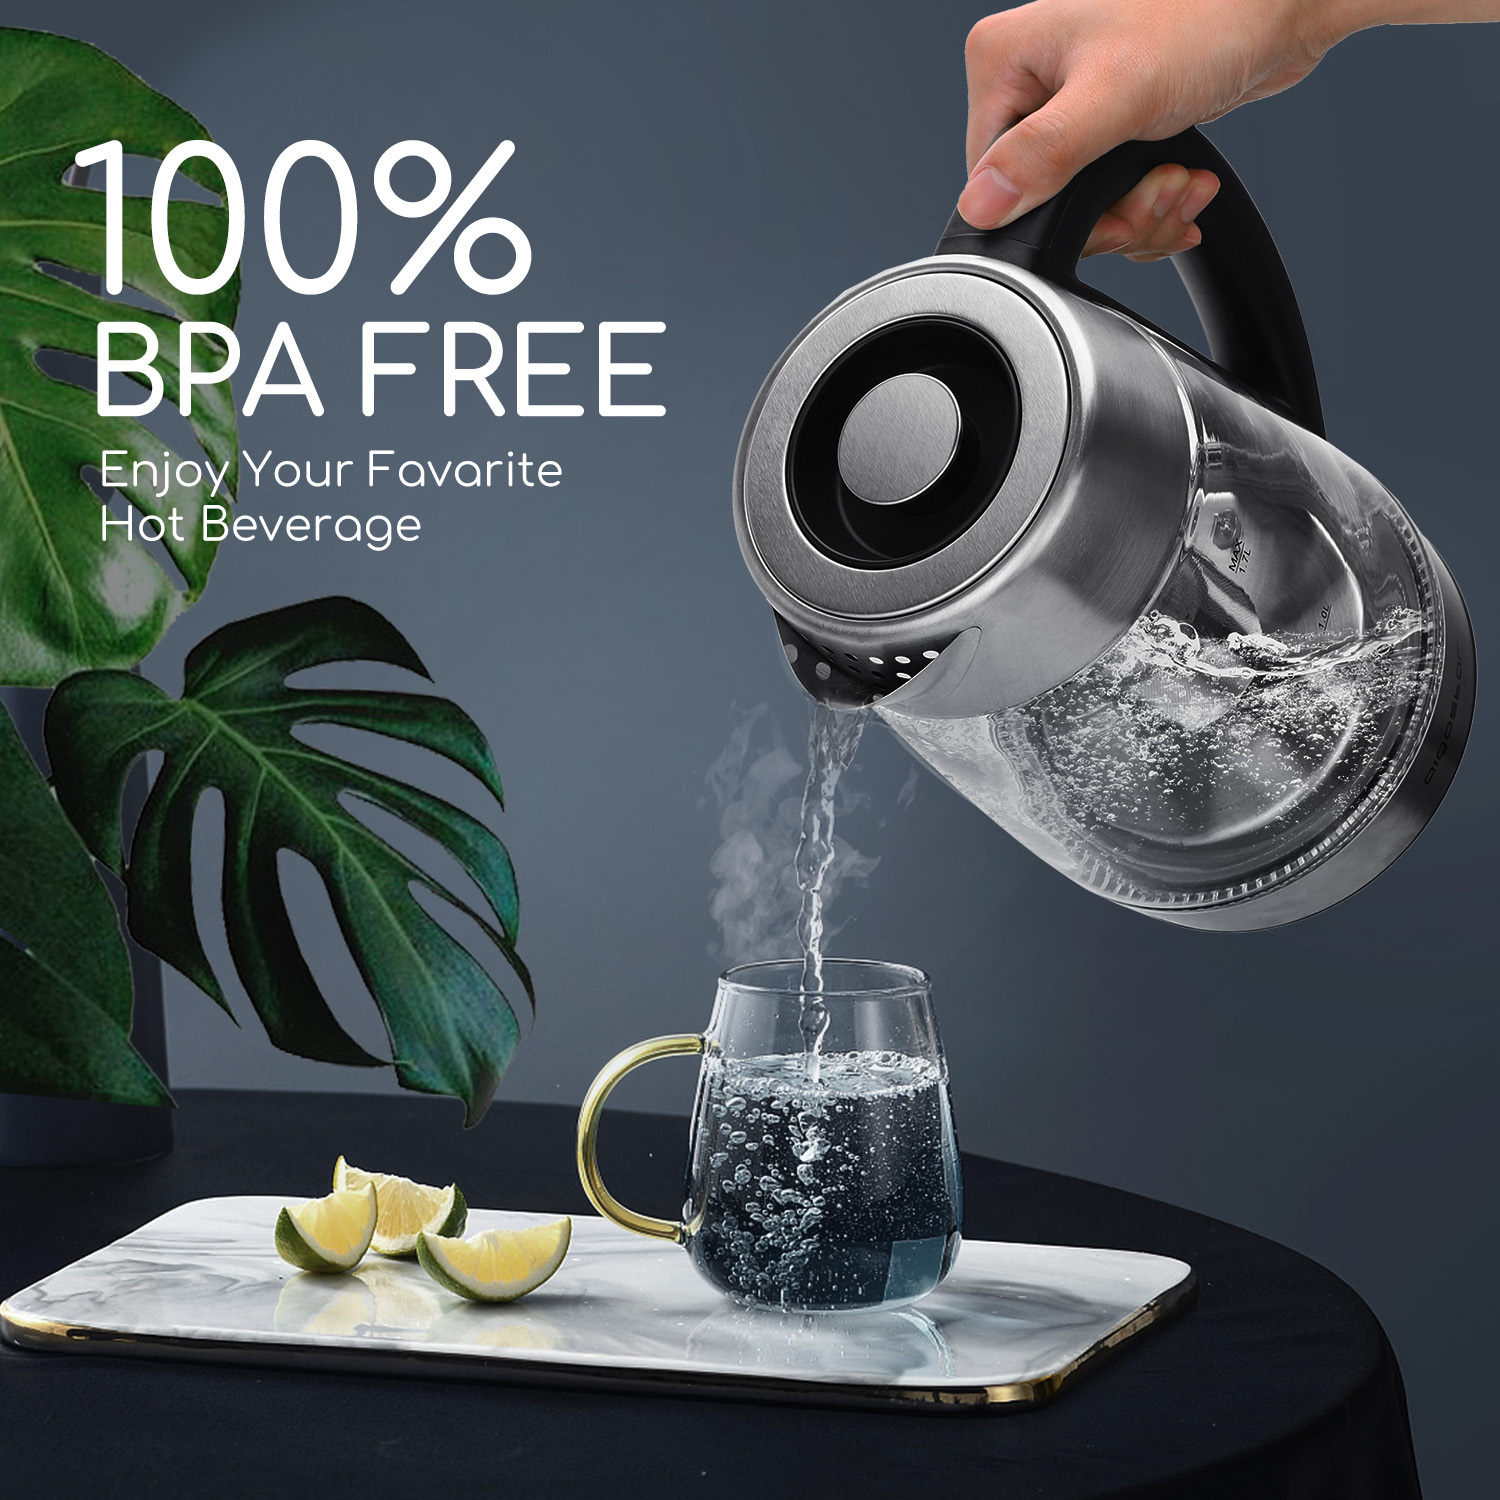 Aigostar Cris - Hervidor de vidrio de borosilicato con infusor de té, 5 niveles de temperatura, 1.7L, 2200 W, función mantener caliente, iluminación LED, apagado automático, libre de BPA.